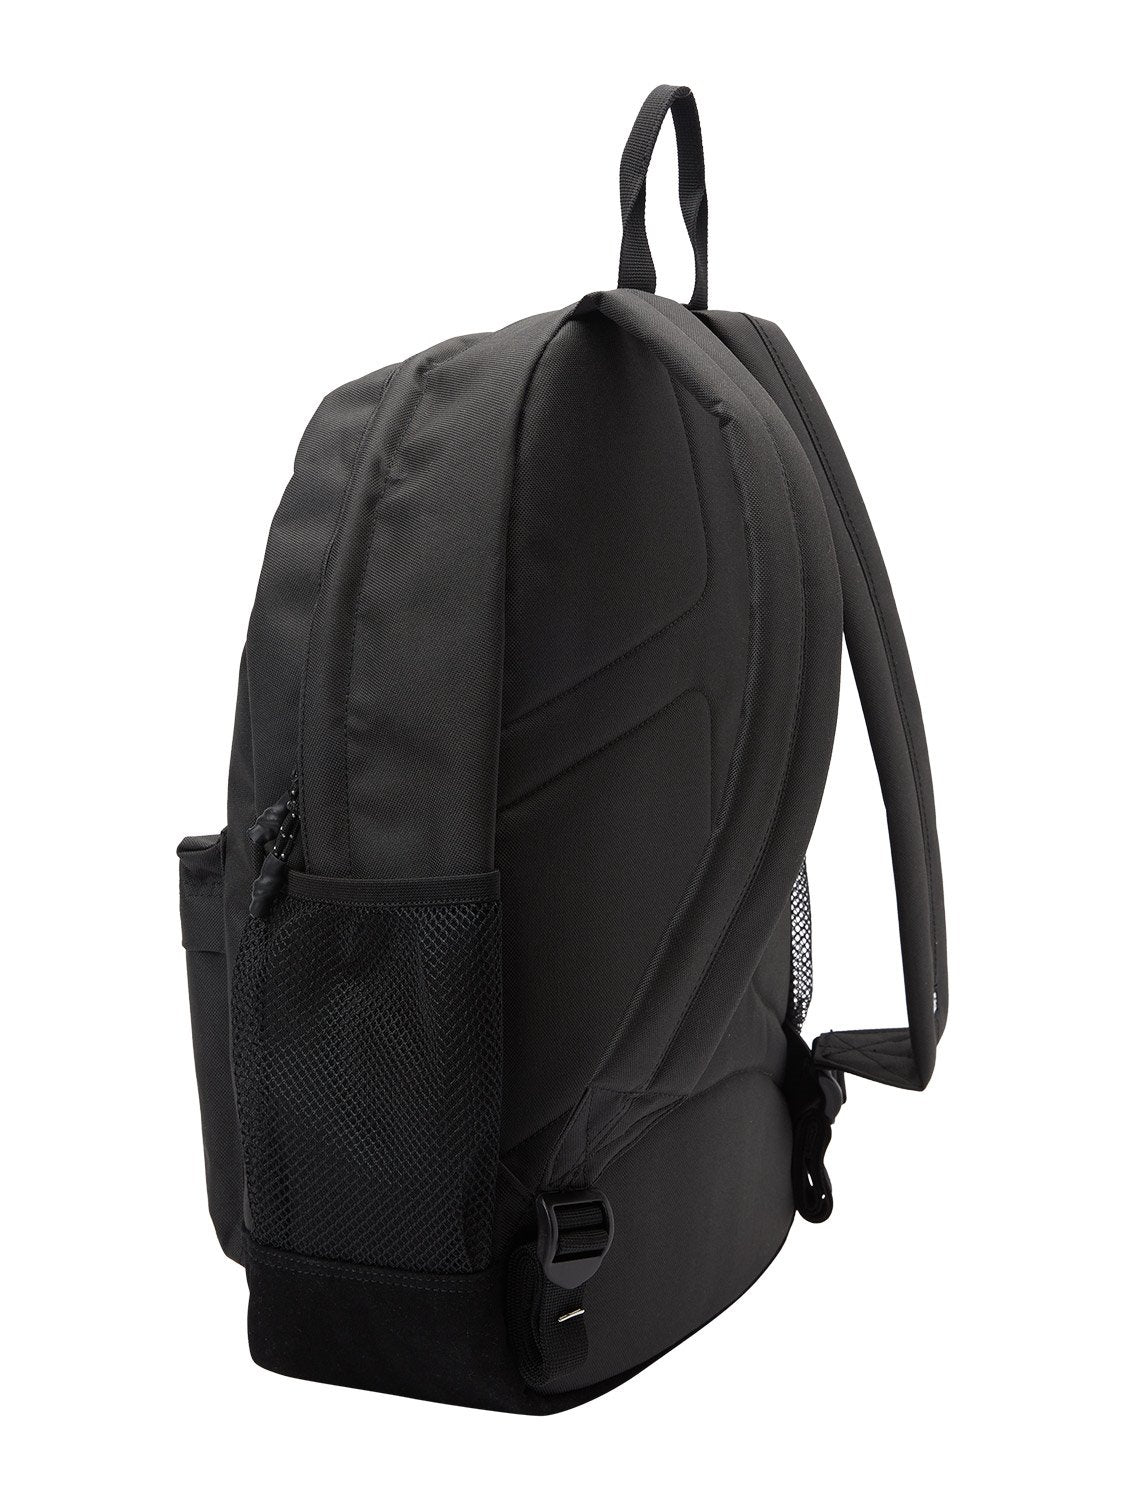 DC Men's Backsider Core 4 20L Backpack